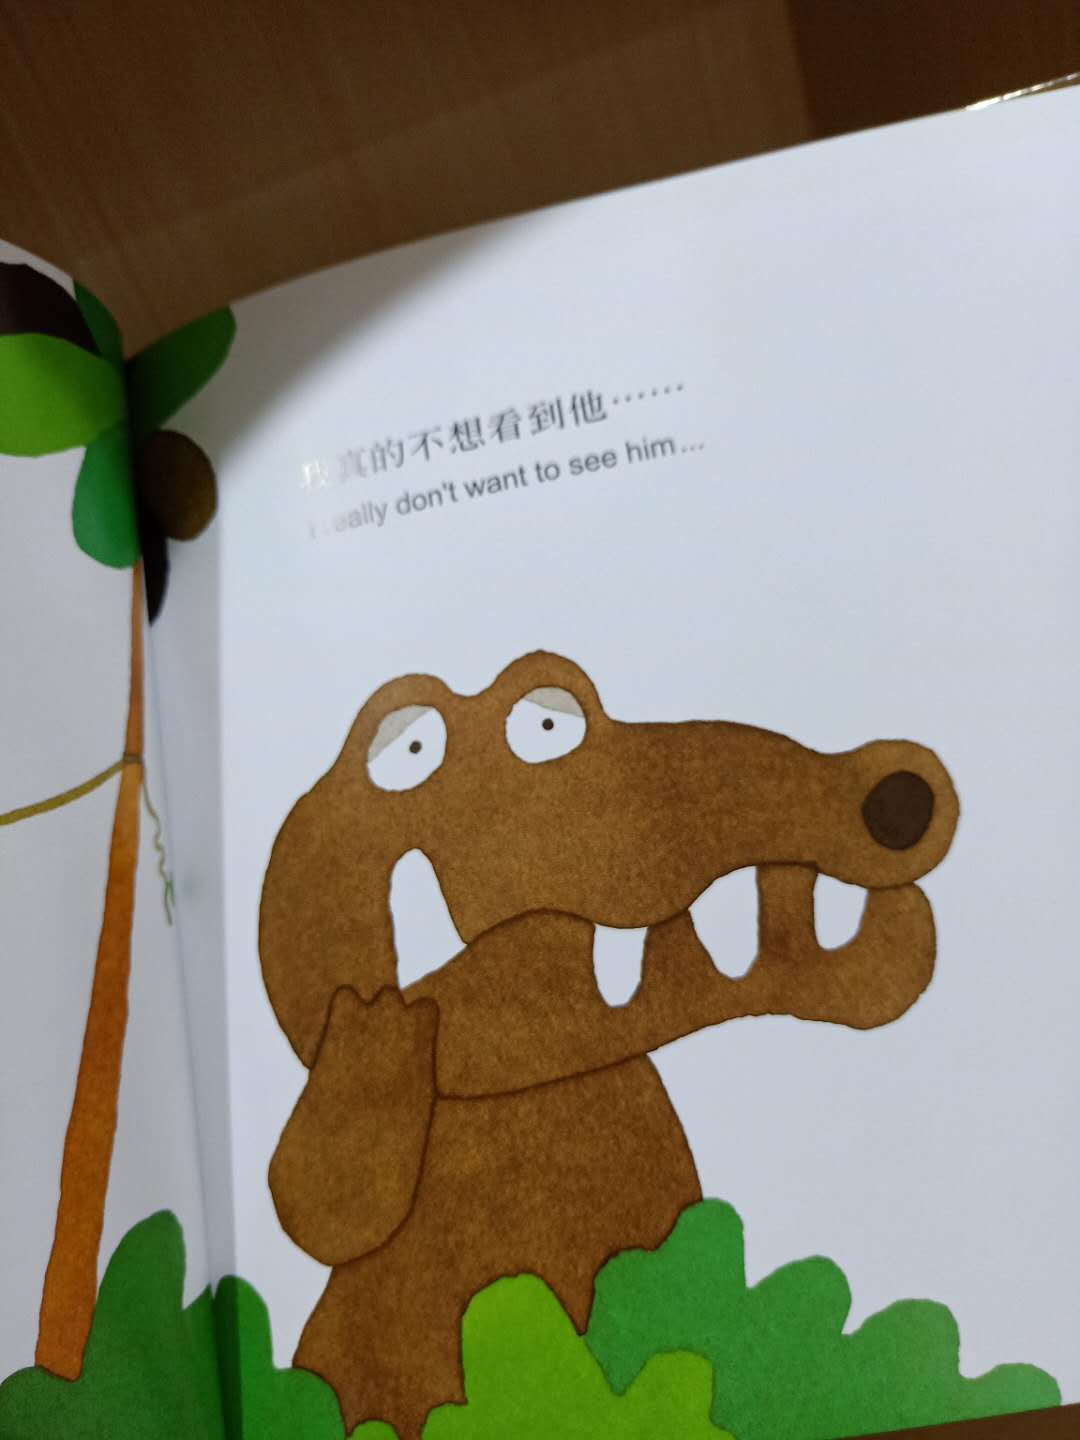 中英文版本很好哦！看到这本书儿子就会提醒自己，我不能在吃糖了。